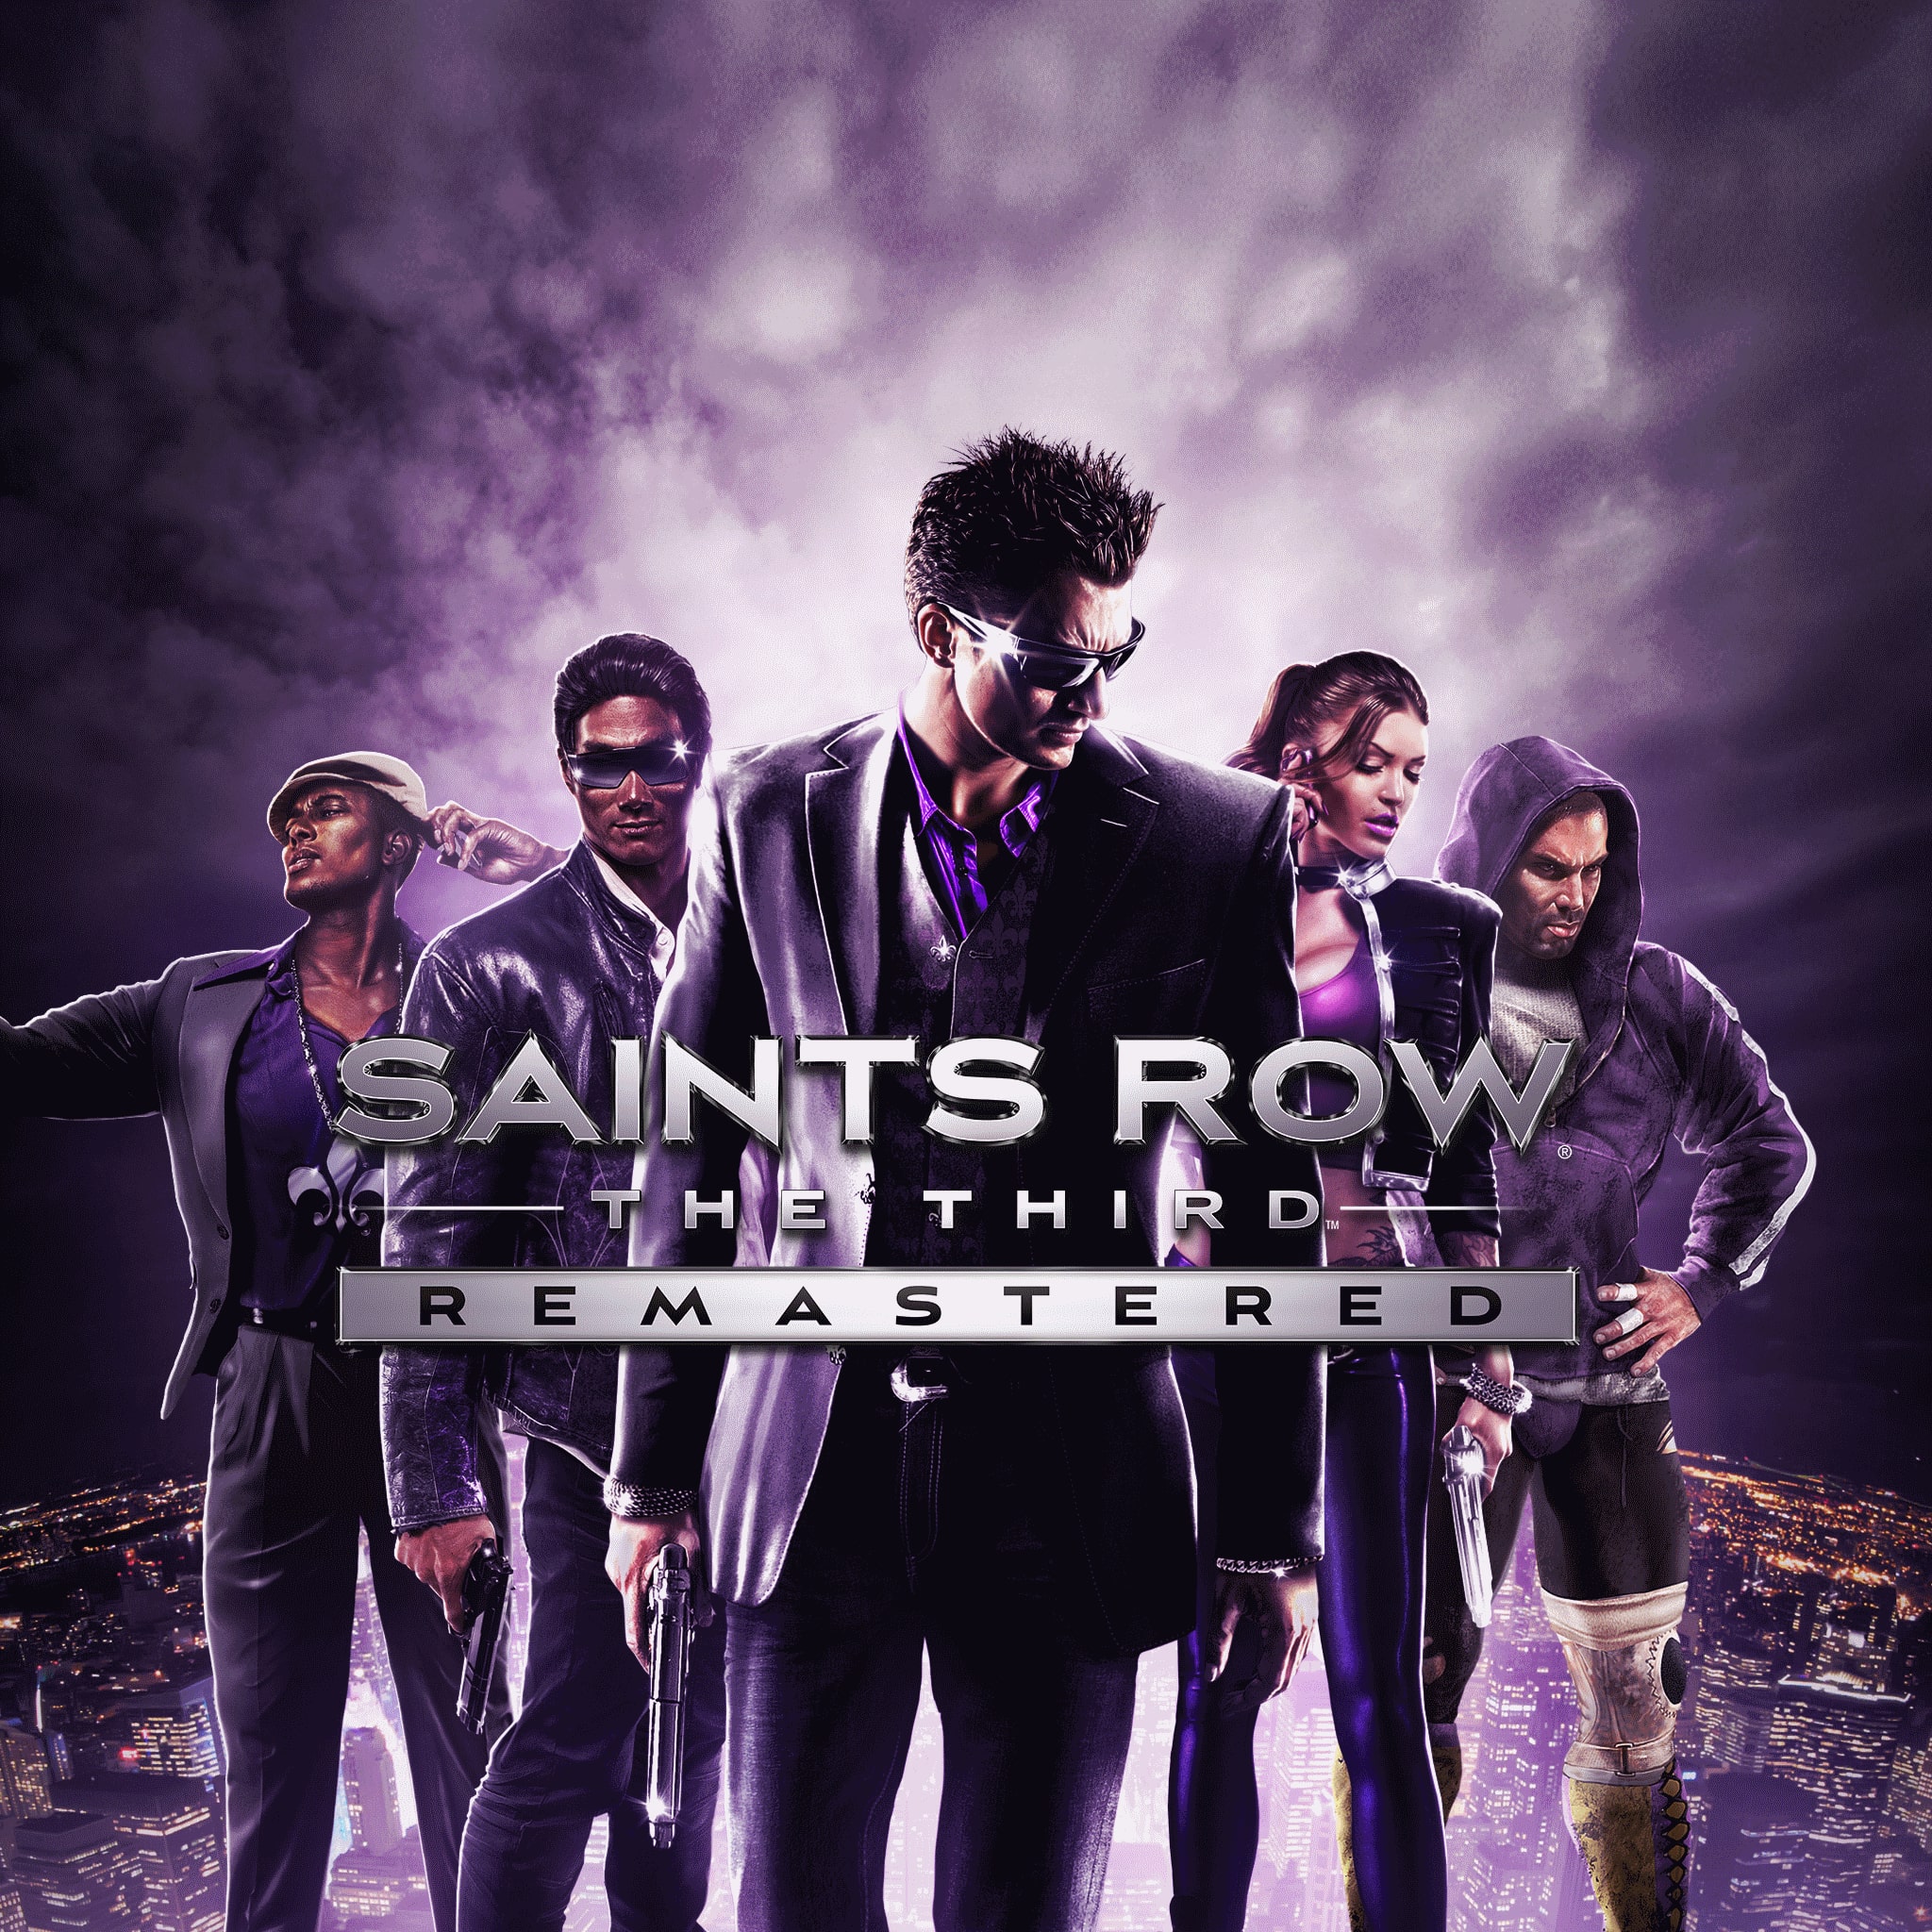 Saints Row: The Third Remastered (English, Korean)